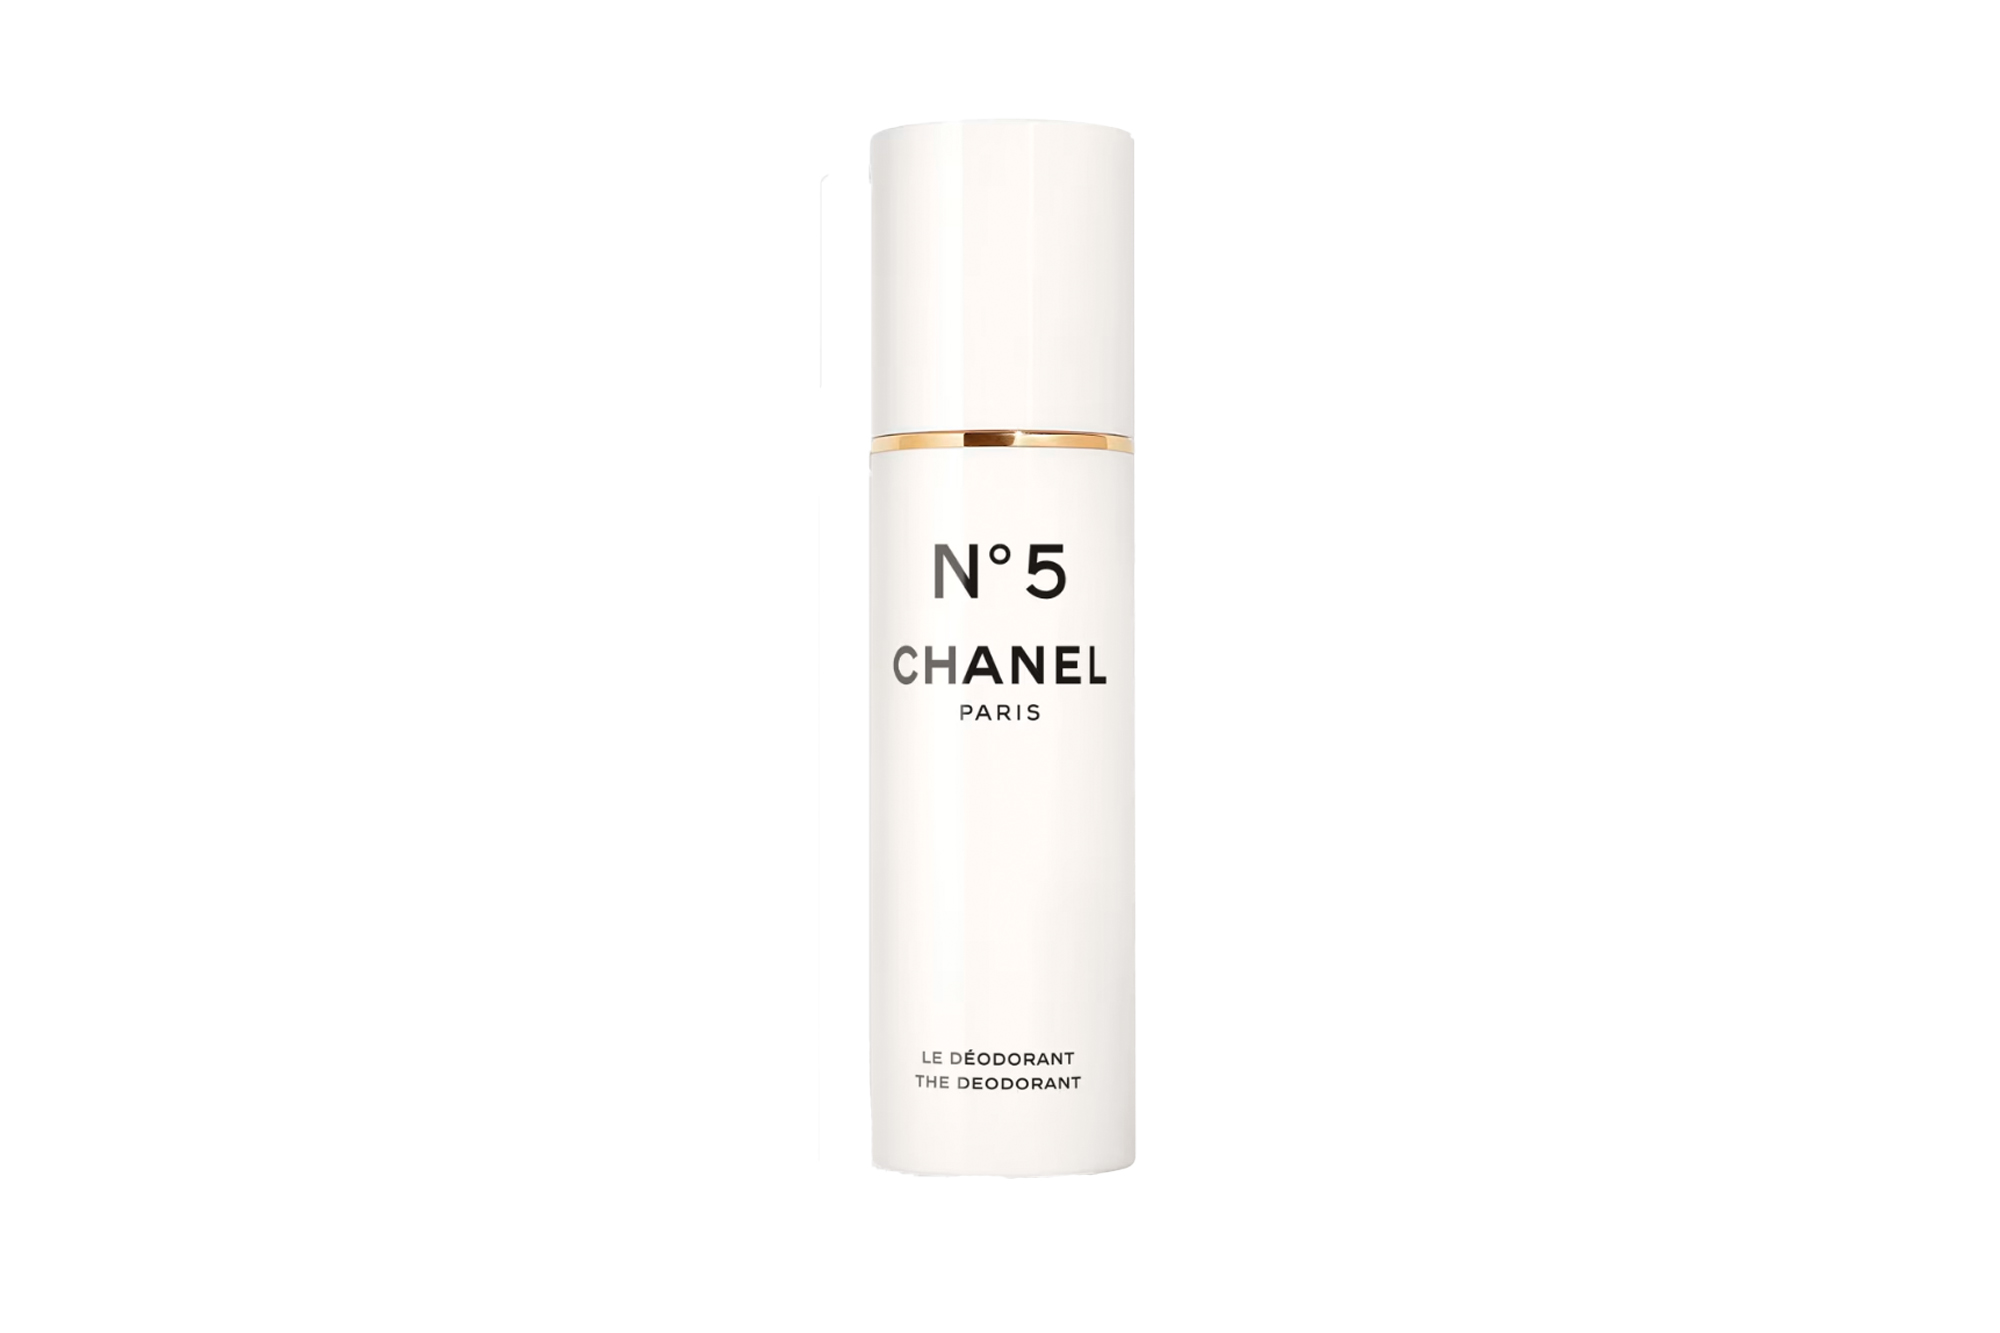 Chanel No. 5 deodorant